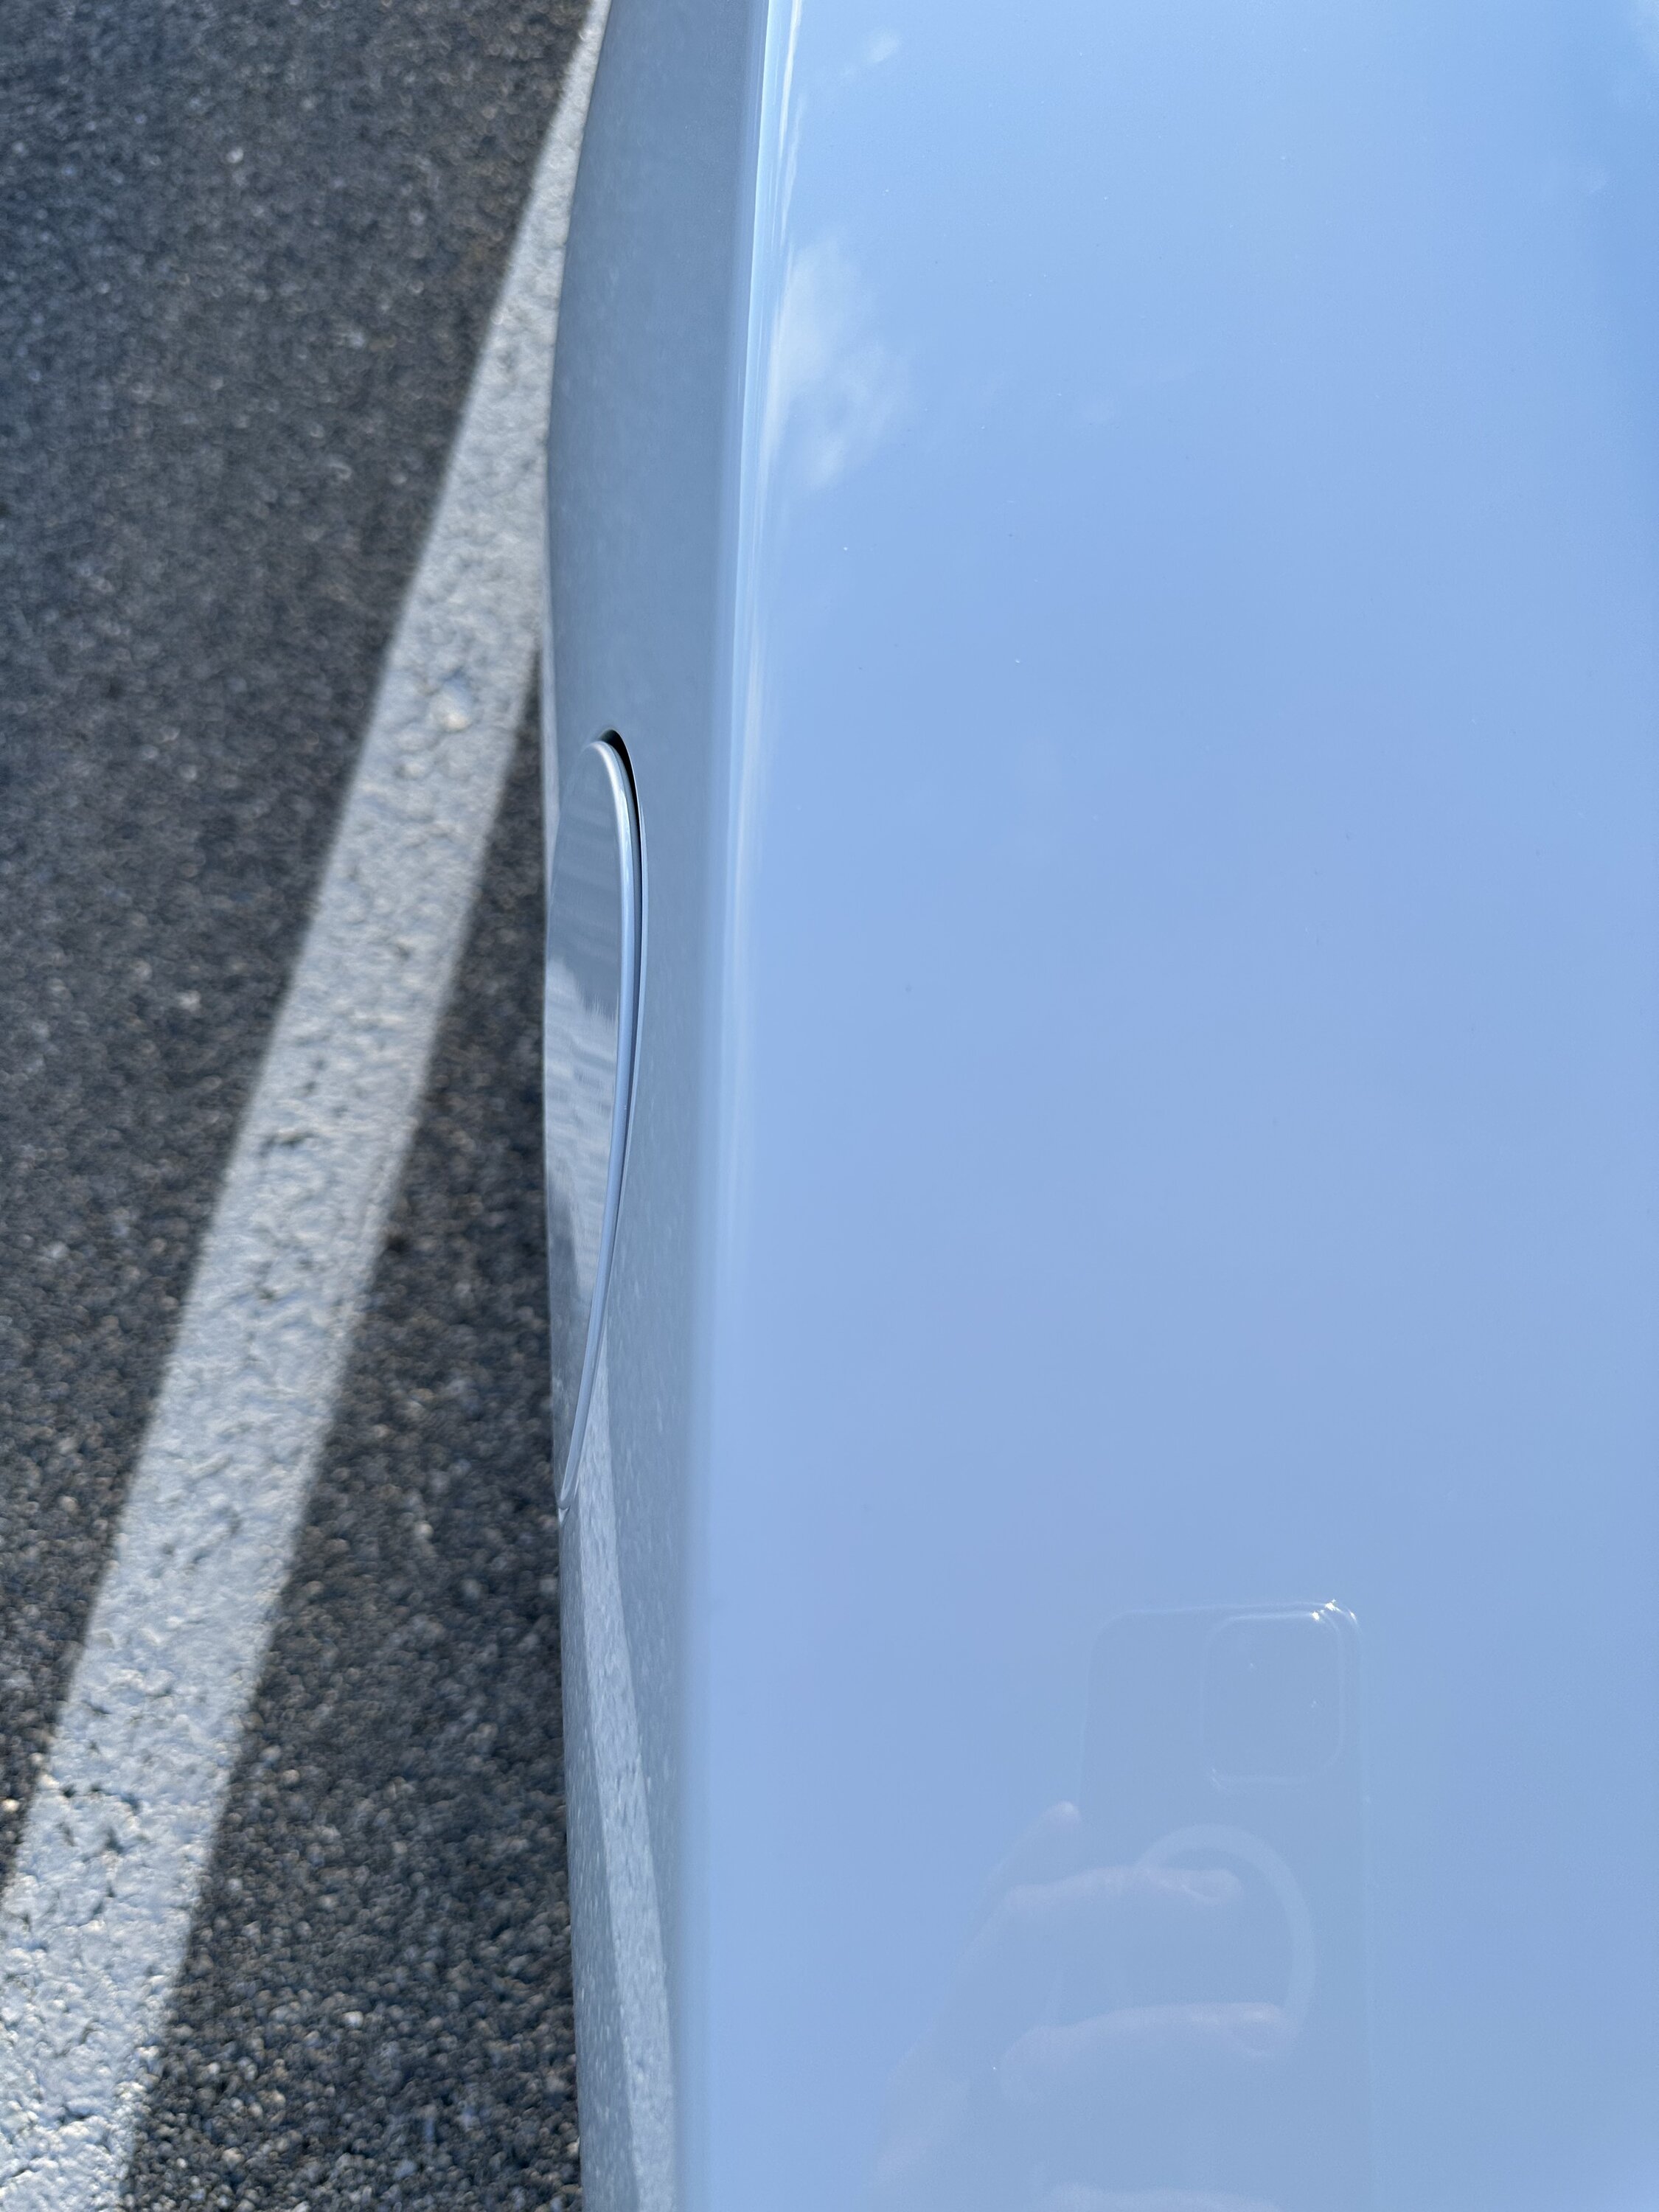 S650 Mustang Fuel Door OCD issue IMG_7525